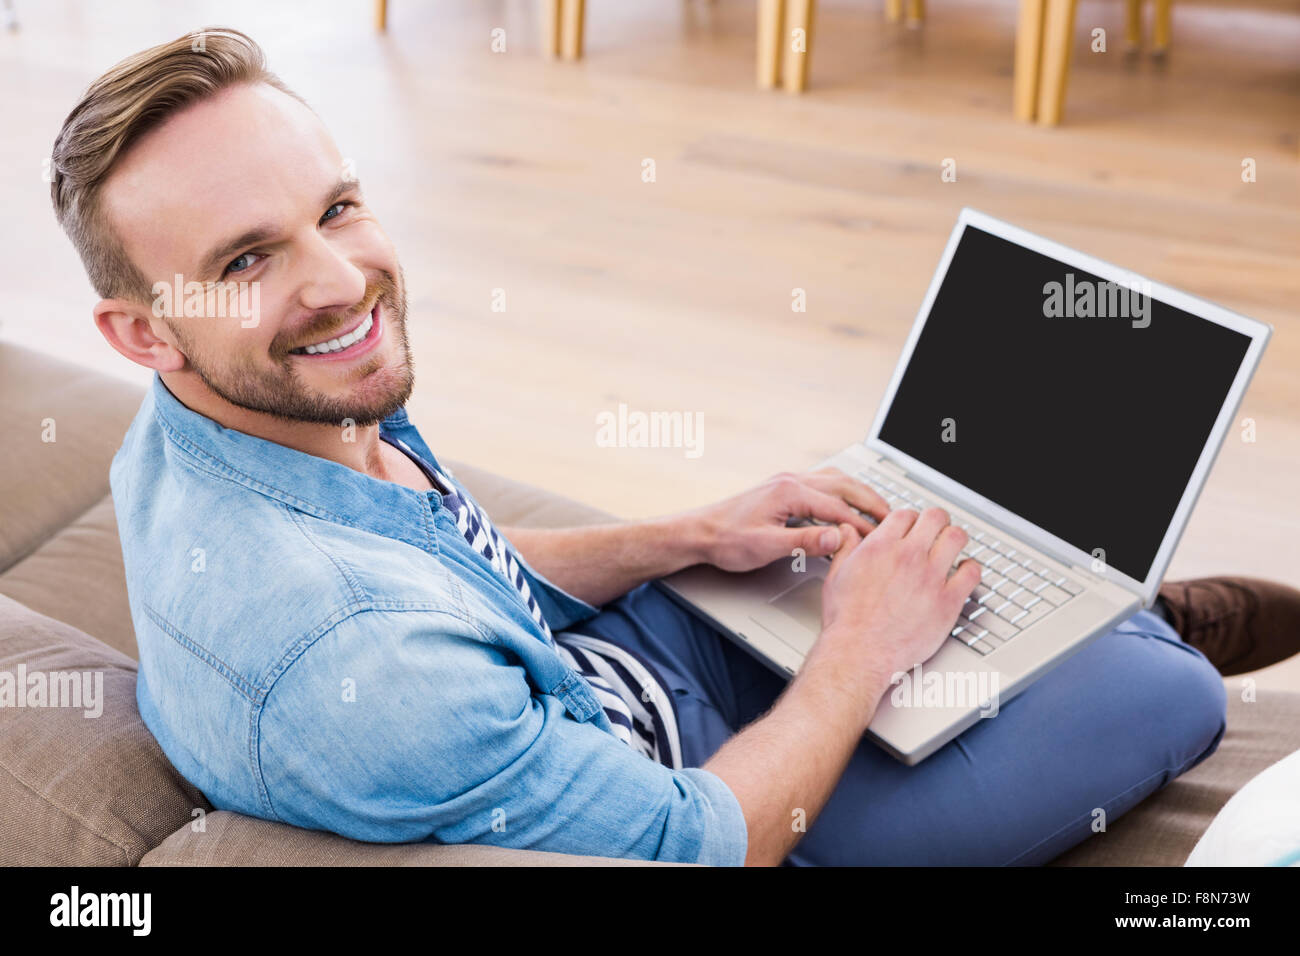 Casual man en utilisant son ordinateur portable Banque D'Images